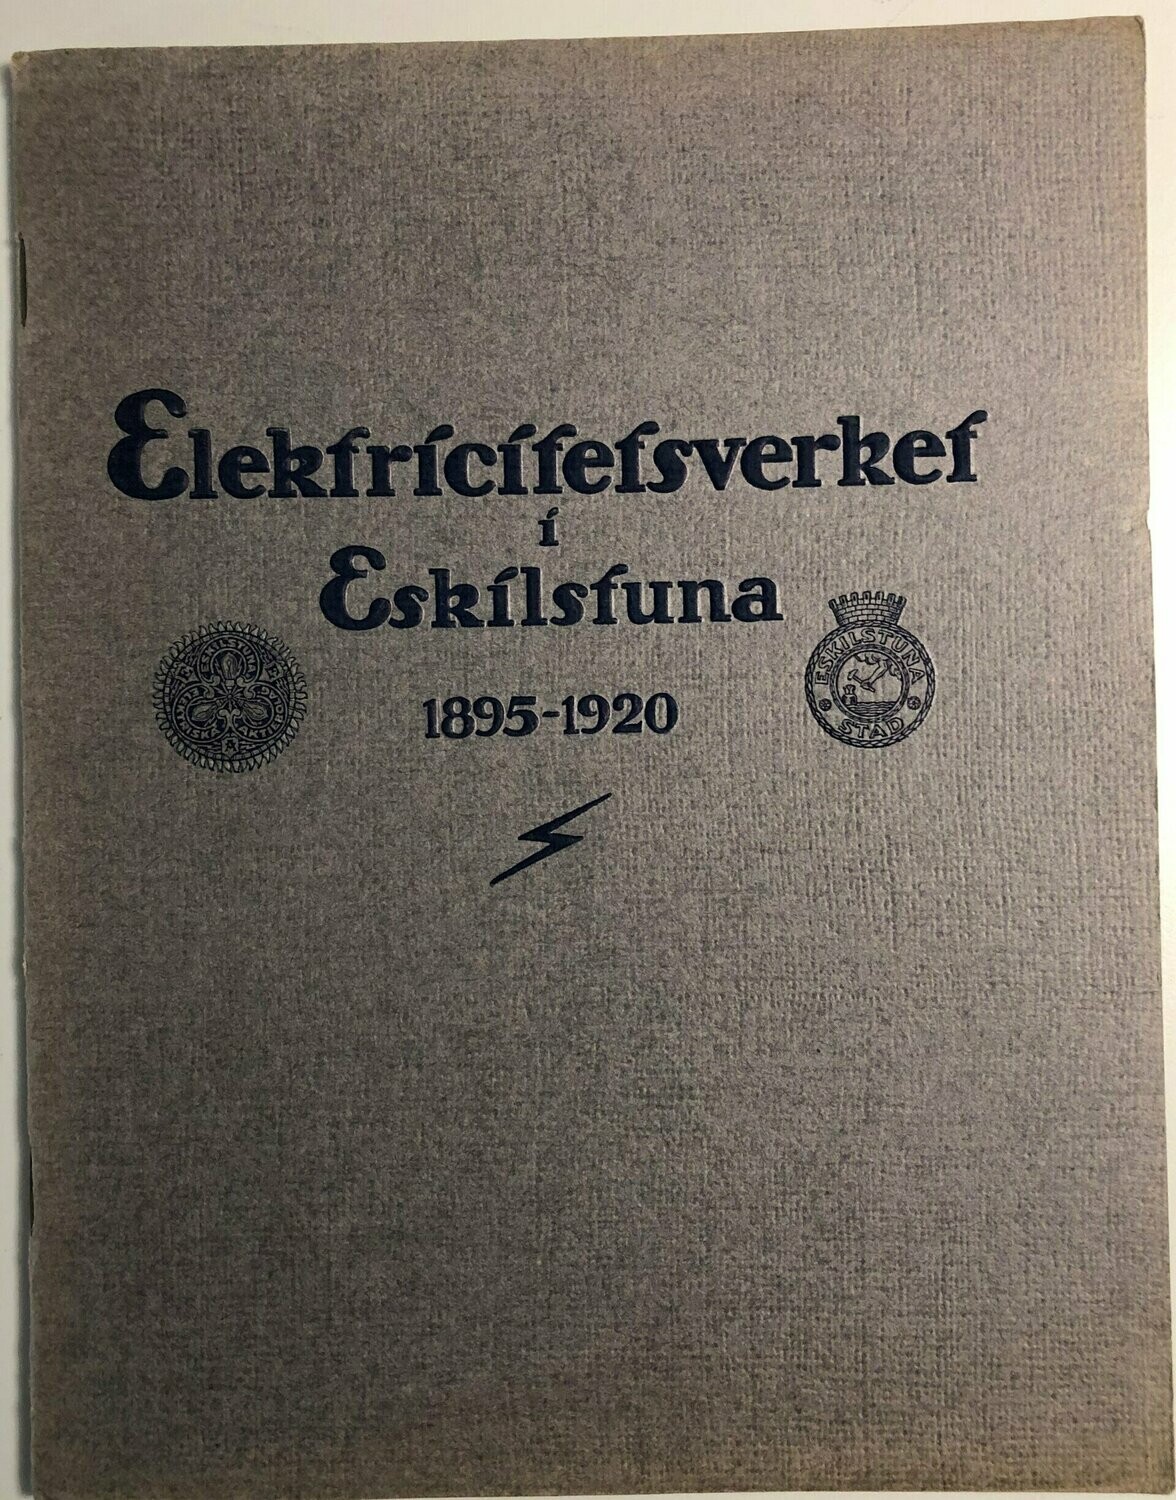 Elektricitetverket i Eskilstuna 1895-1920